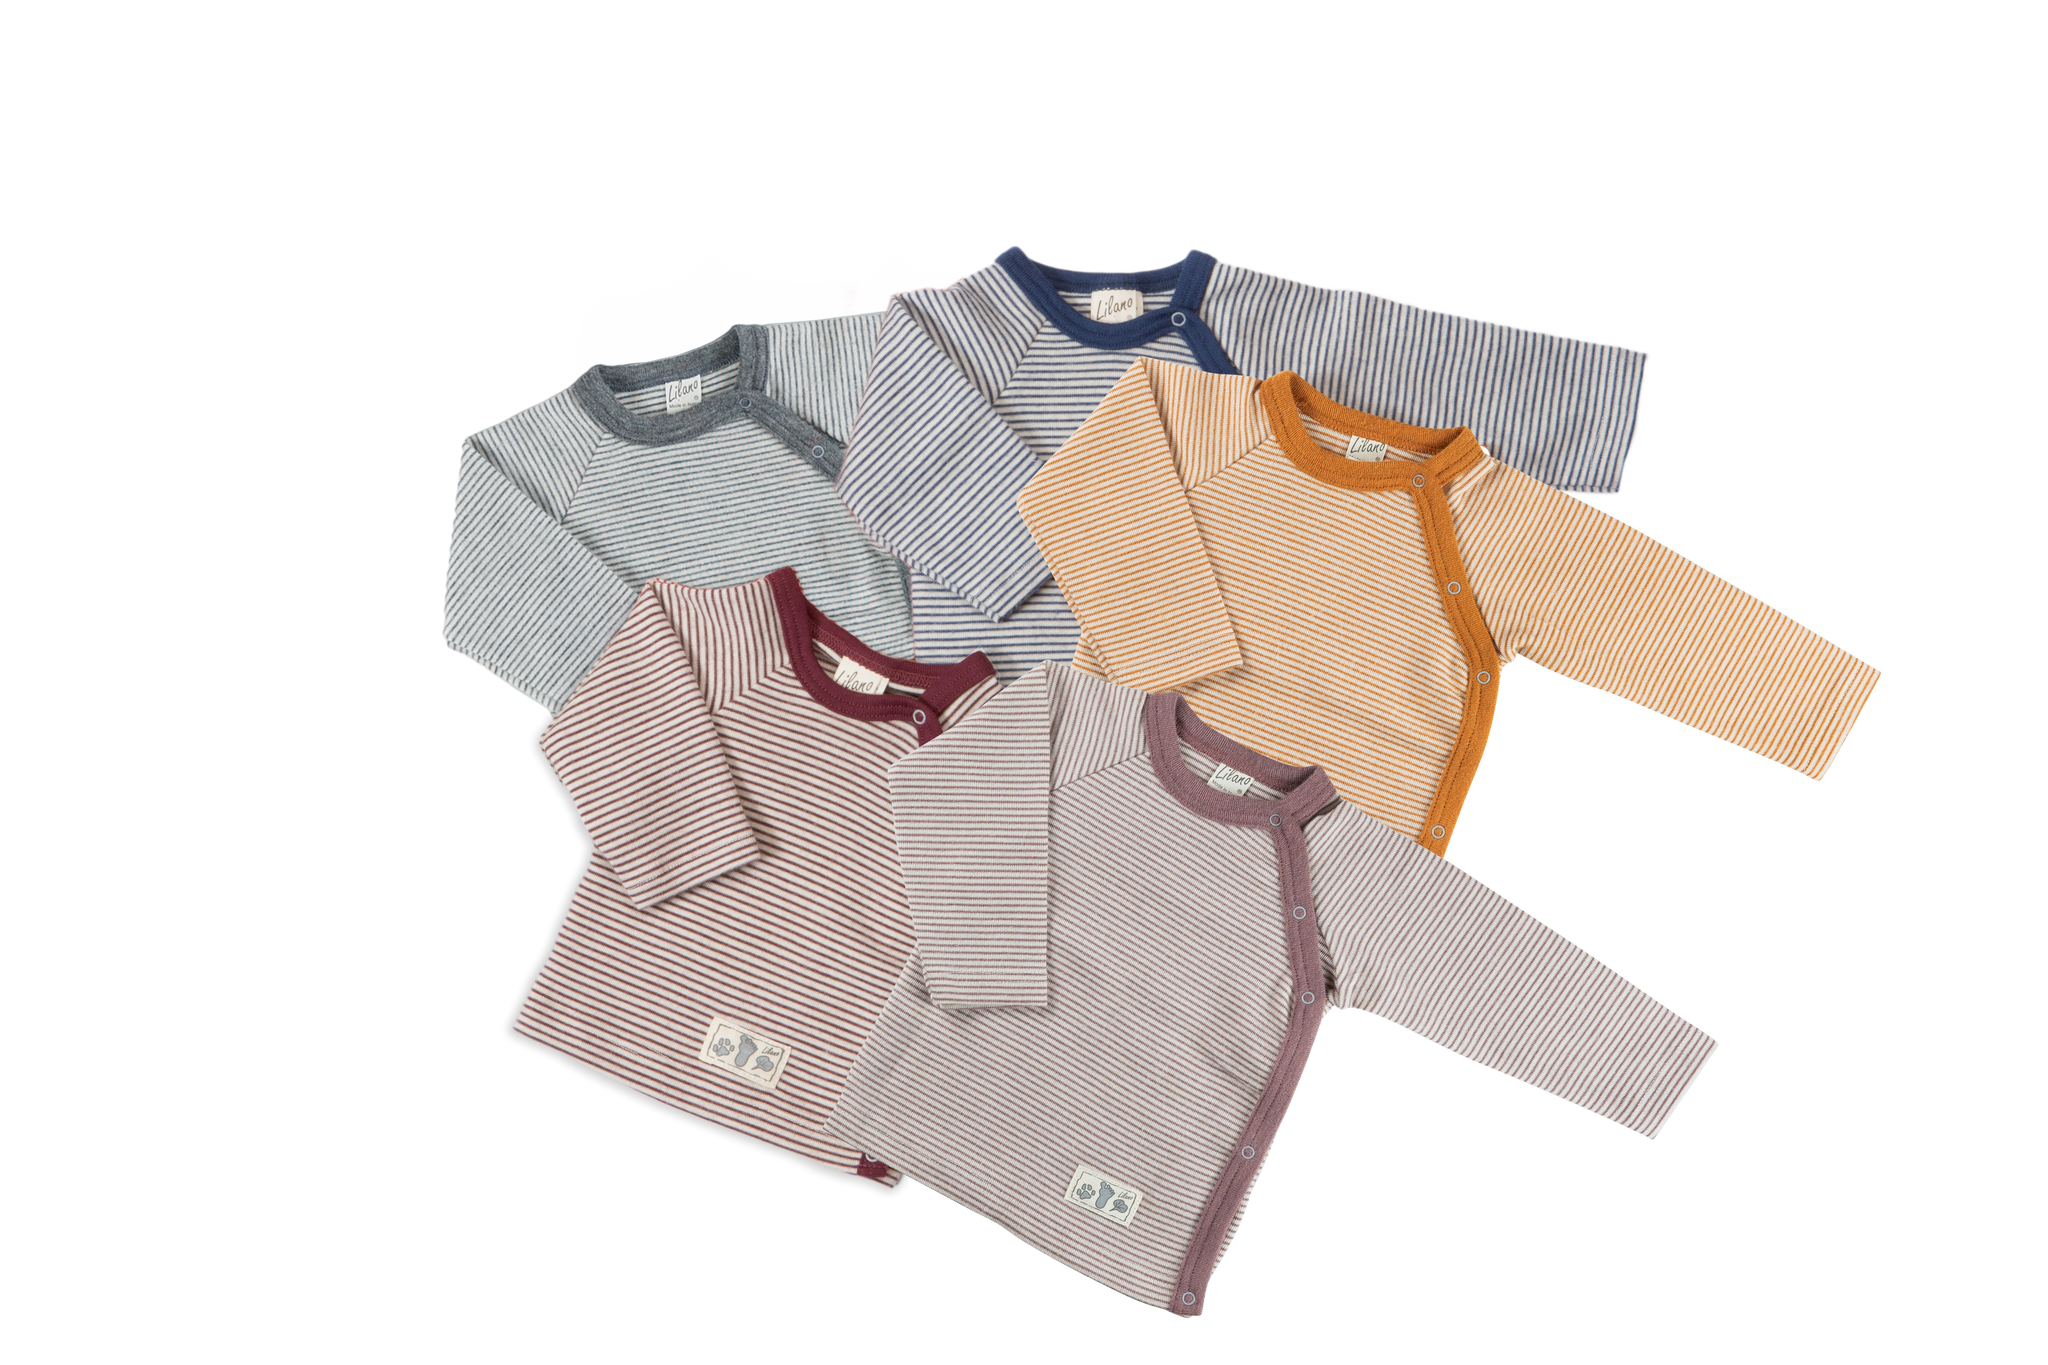 Jacke/Schlüttli (Shirt mit seitlicher Knopfleiste), Wolle/Seide, Mauve geringelt - Lilano